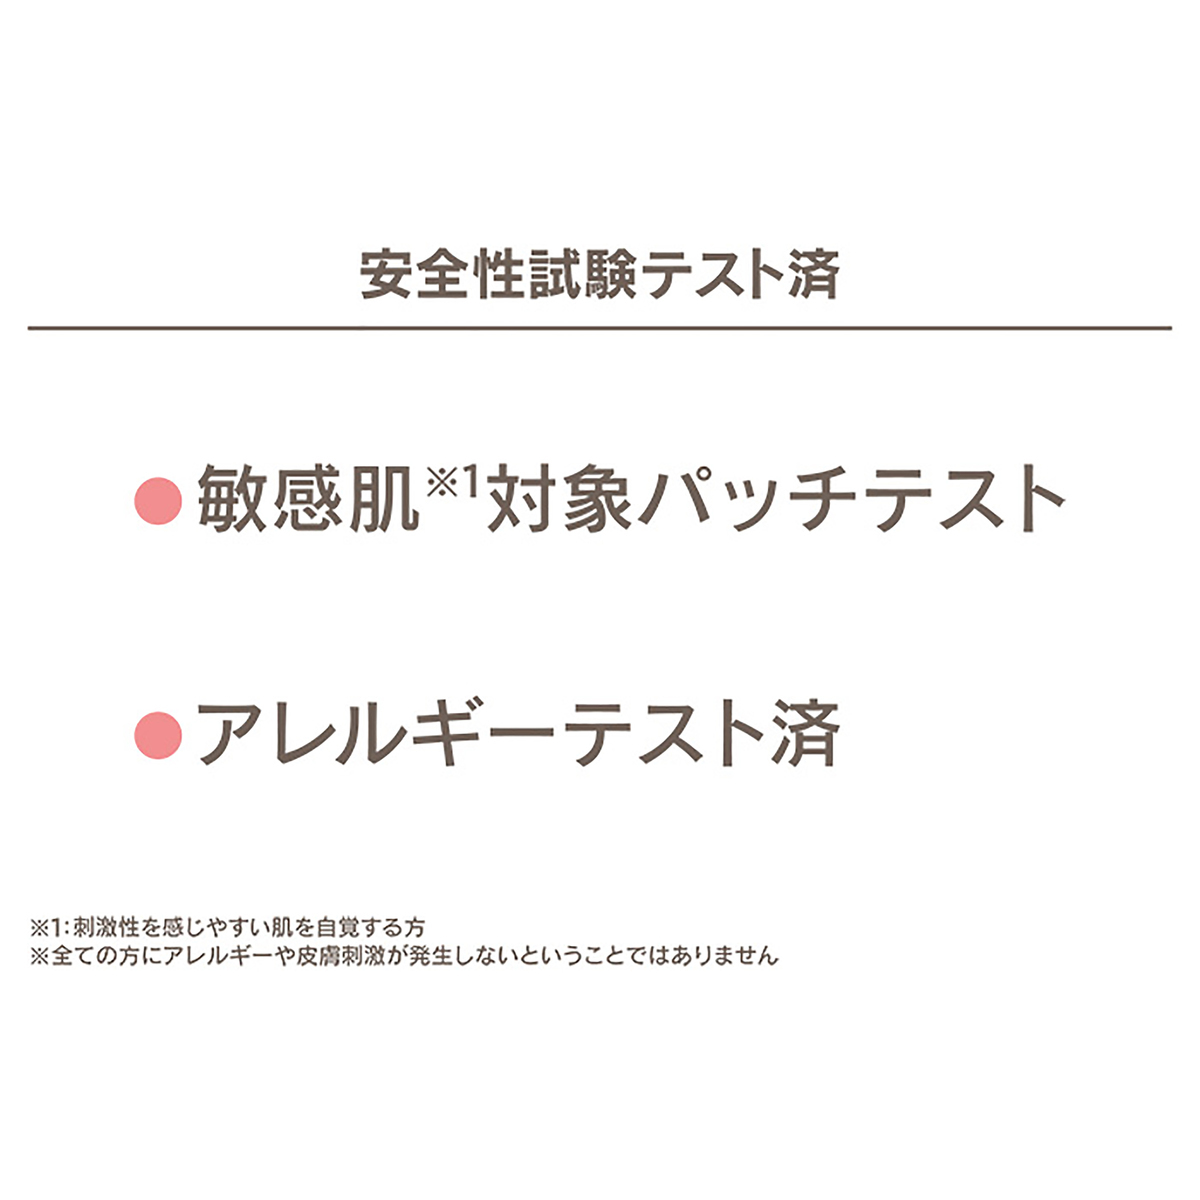 オーデュオー コットンフォームプレミアムモイストお得6本特別セット - QVC.jp